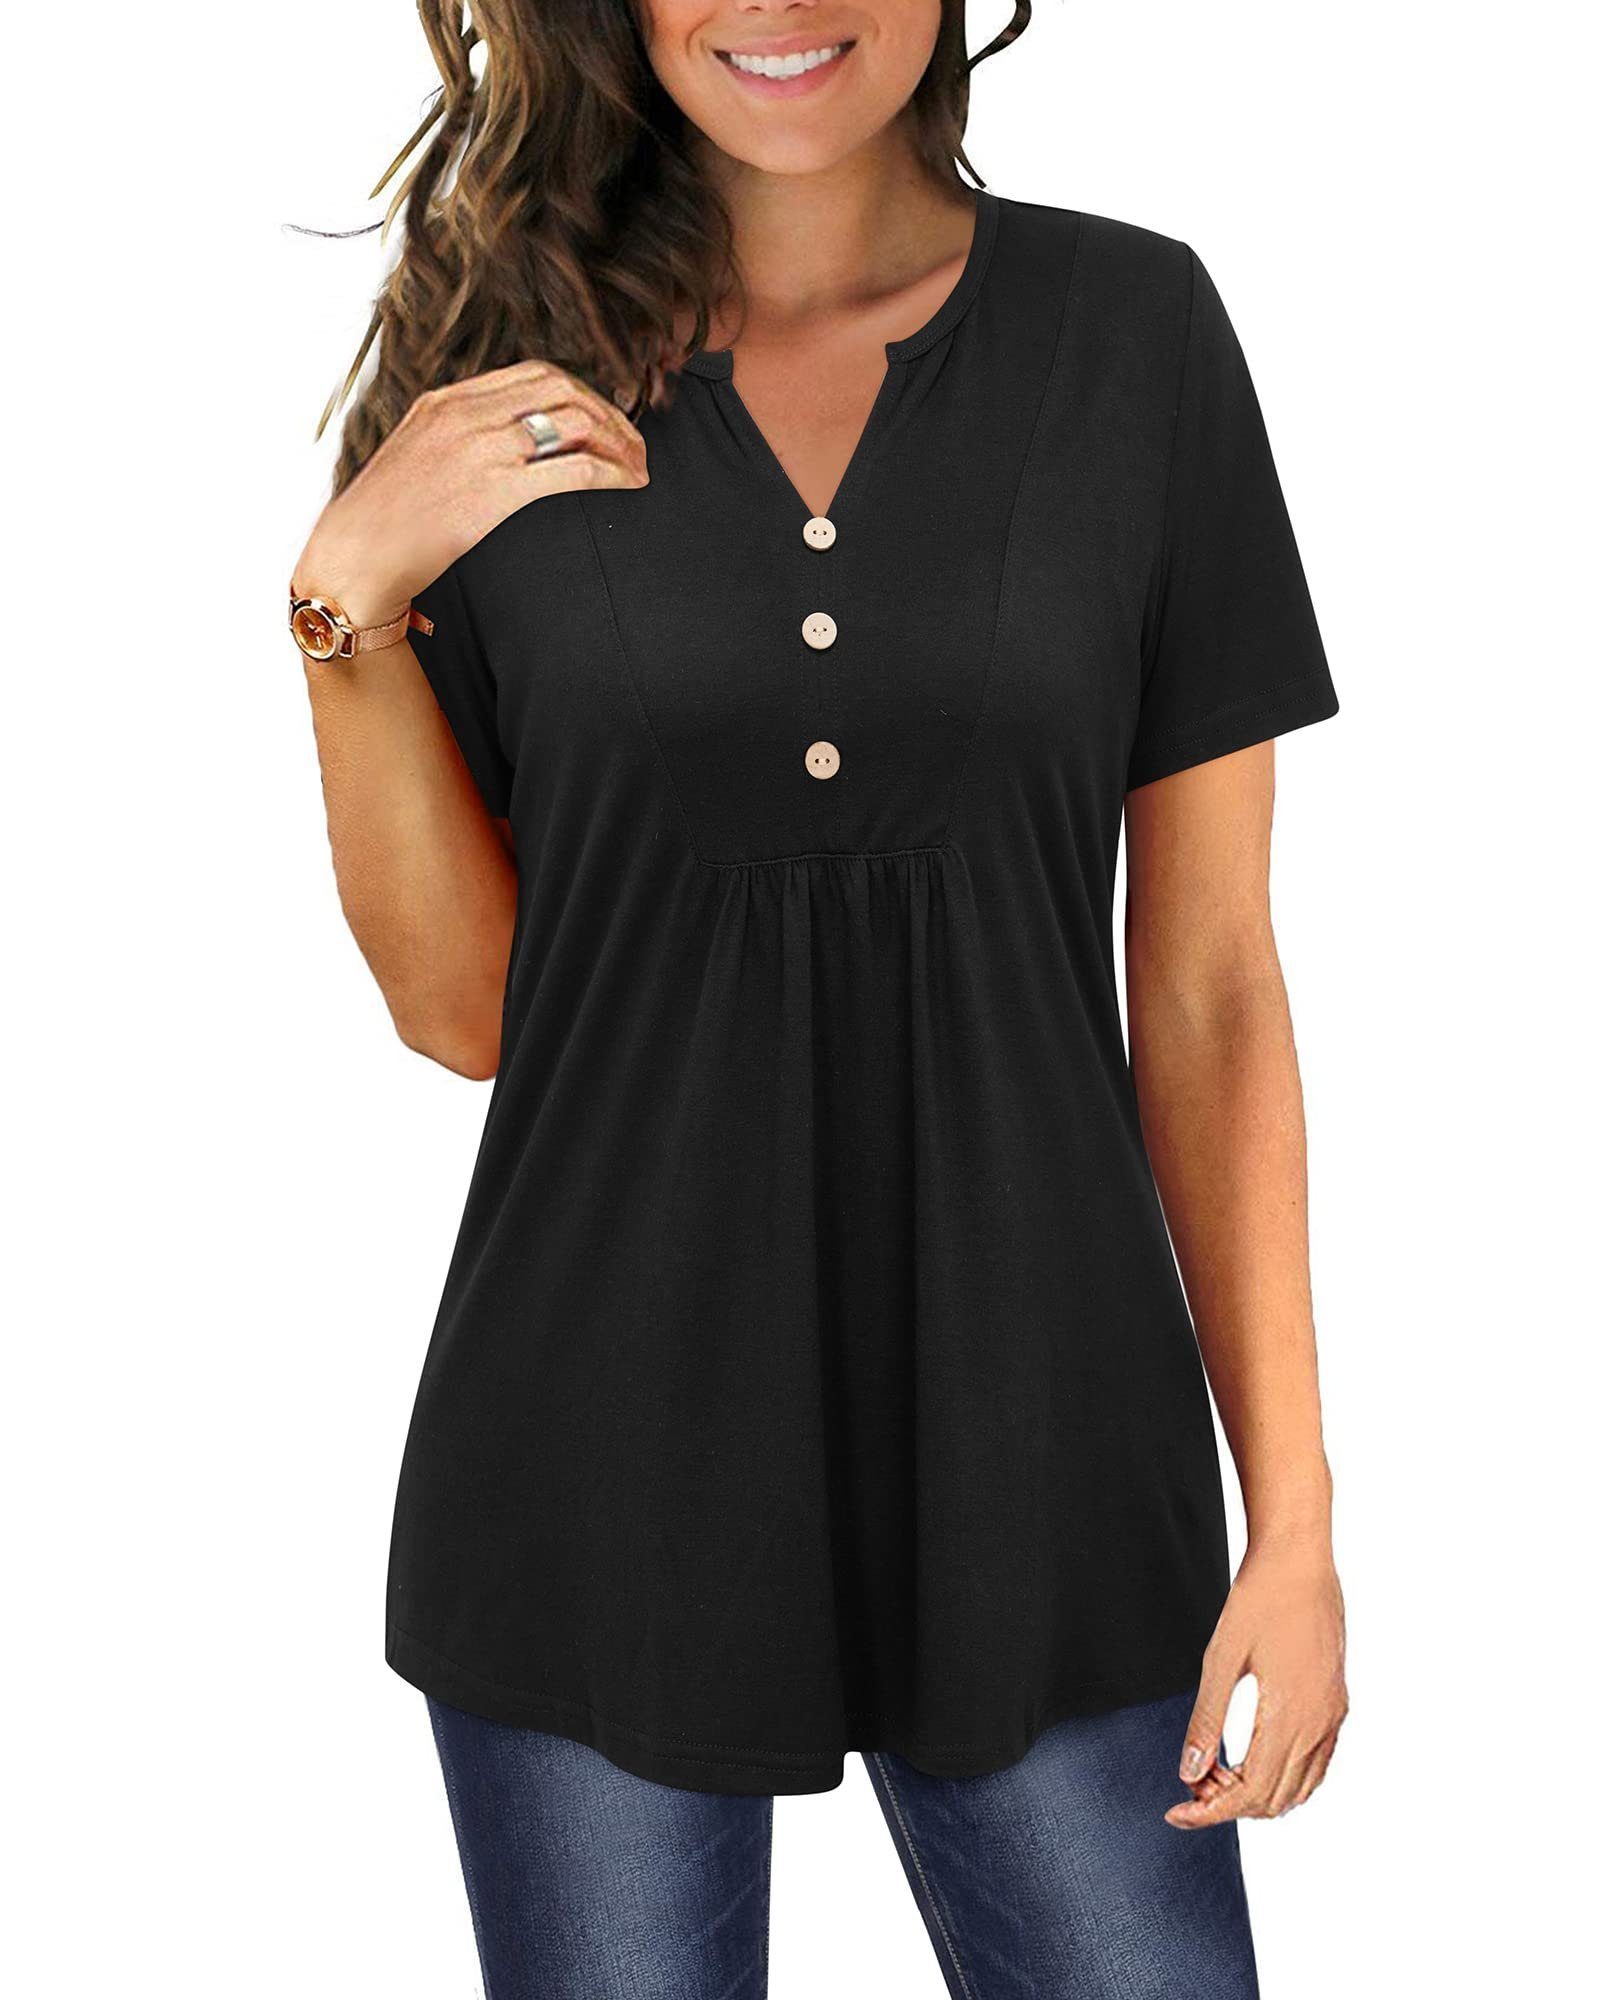 G4Free T-Shirt Shirt Schwarz Oberteile shirts Plissiert T Tunika Damen Kurzarm Ausschnitt V